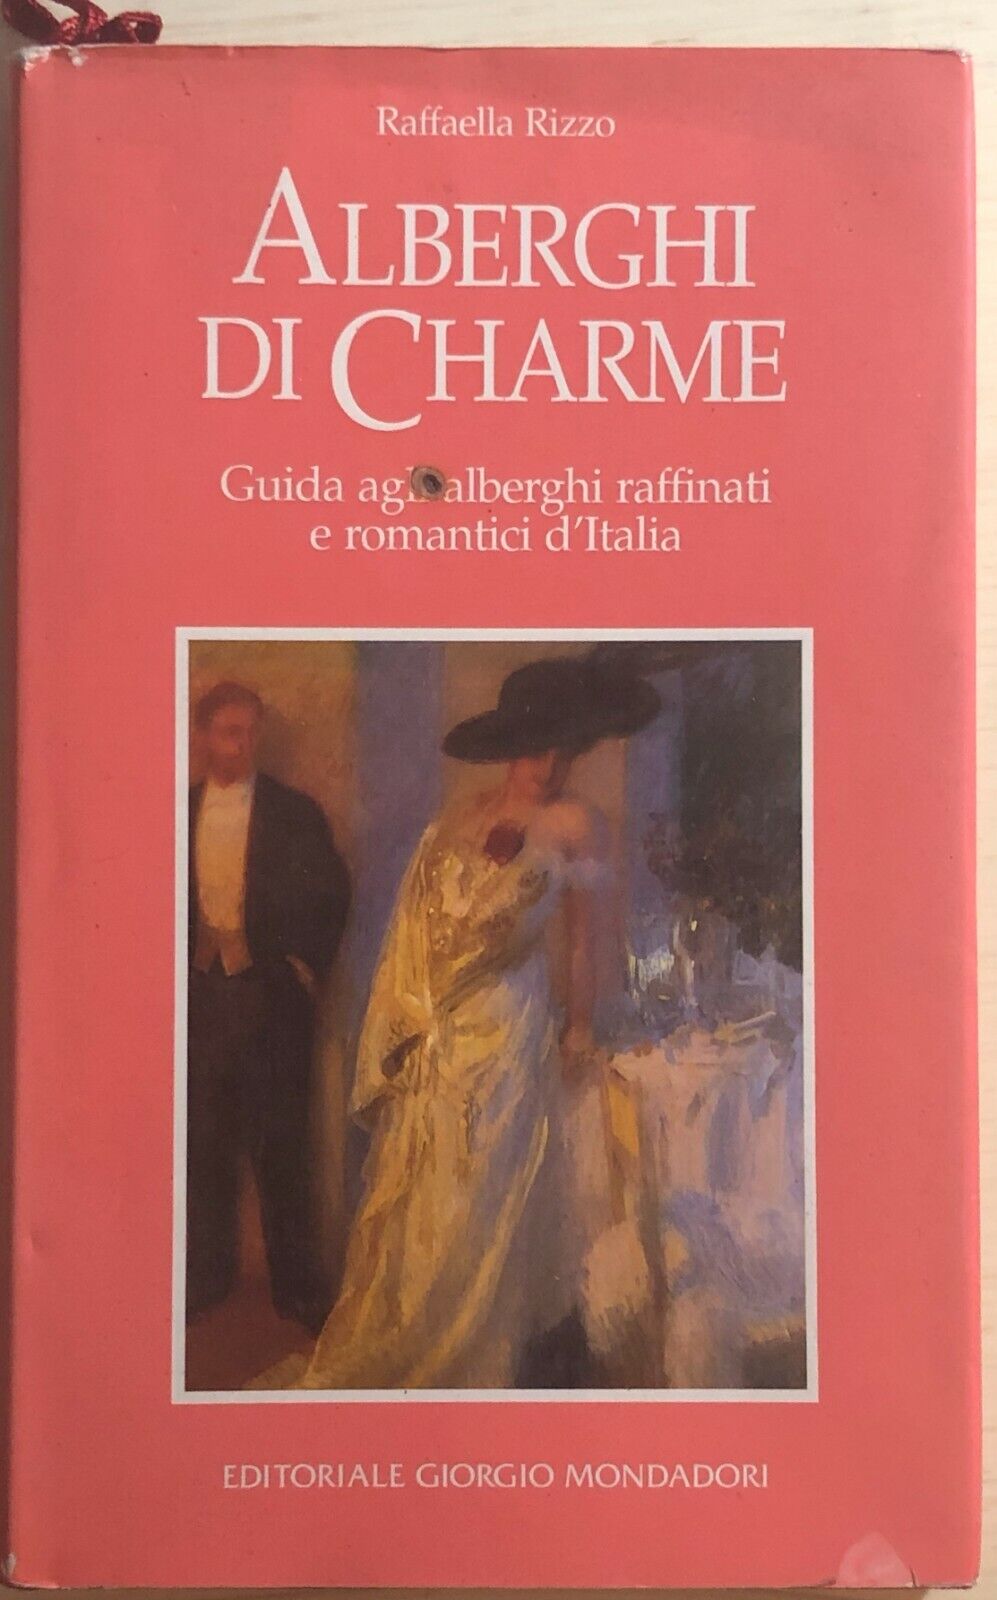 Alberghi di charme di Raffaella Rizzo, 1995, Editoriale Giorgio Mondadori